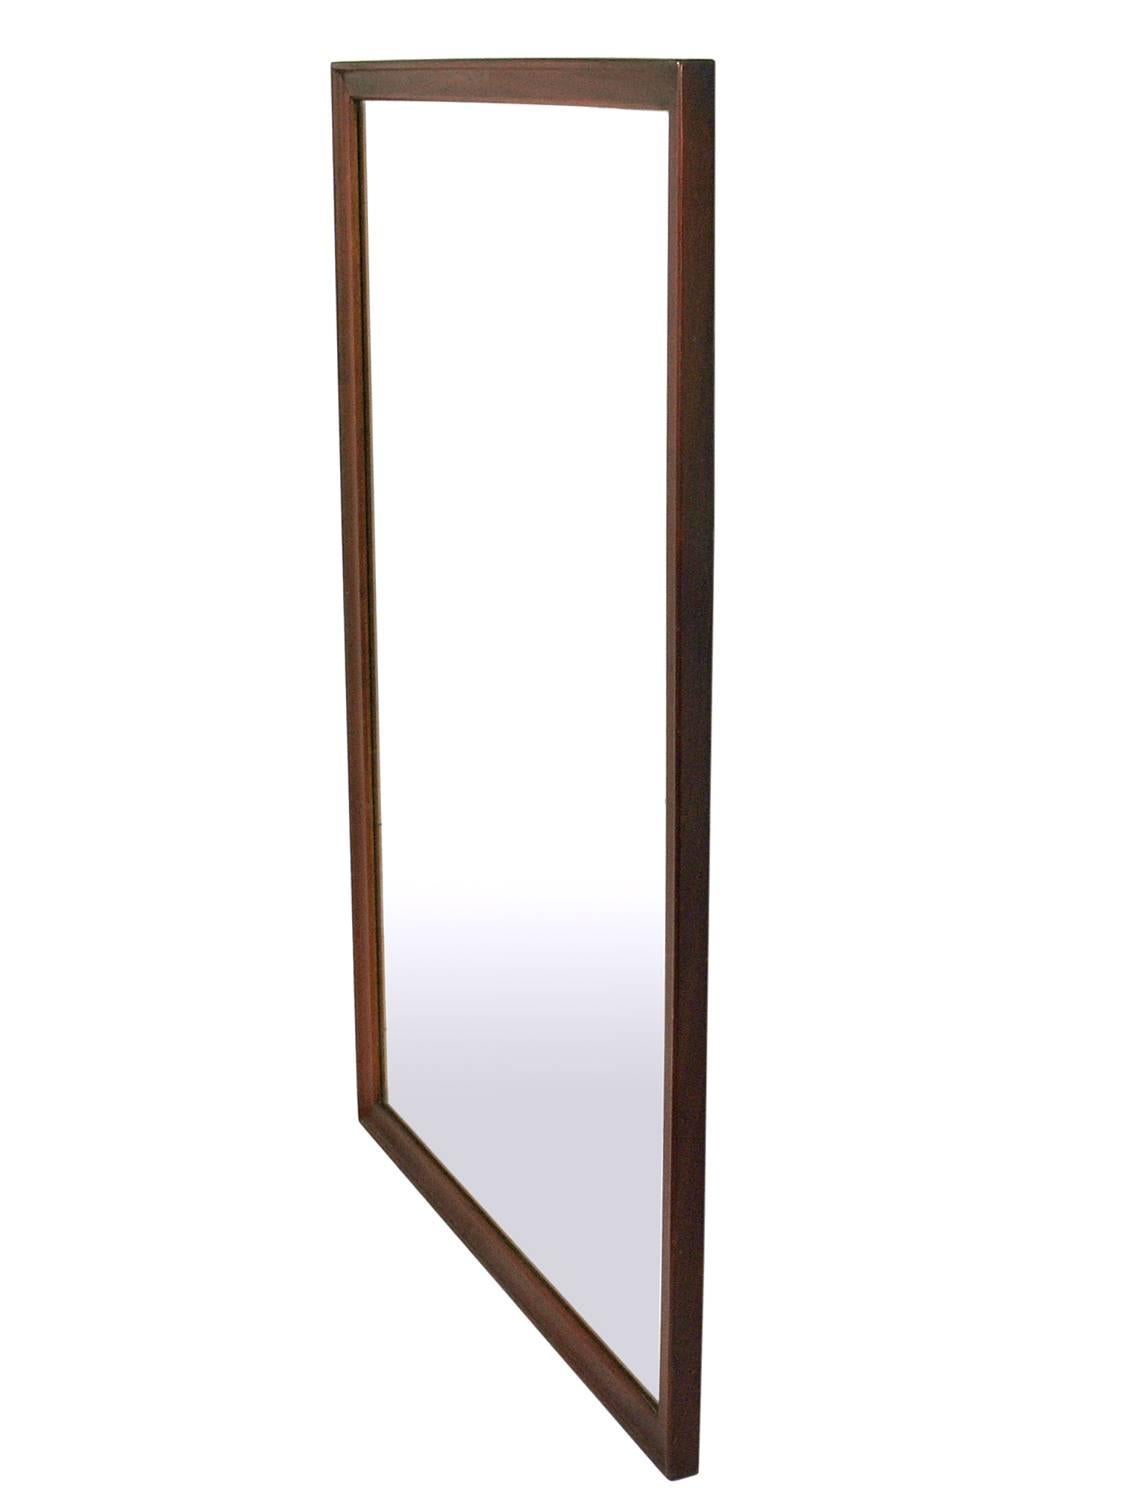 Sauber gefütterter Spiegel aus Nussbaumholz von Kipp Stewart für Drexel, amerikanisch, ca. 1950er Jahre. Behält seine warme Originalpatina. Wurde gereinigt und dänisch geölt. Can vertikal oder horizontal aufgehängt werden, lassen Sie uns einfach